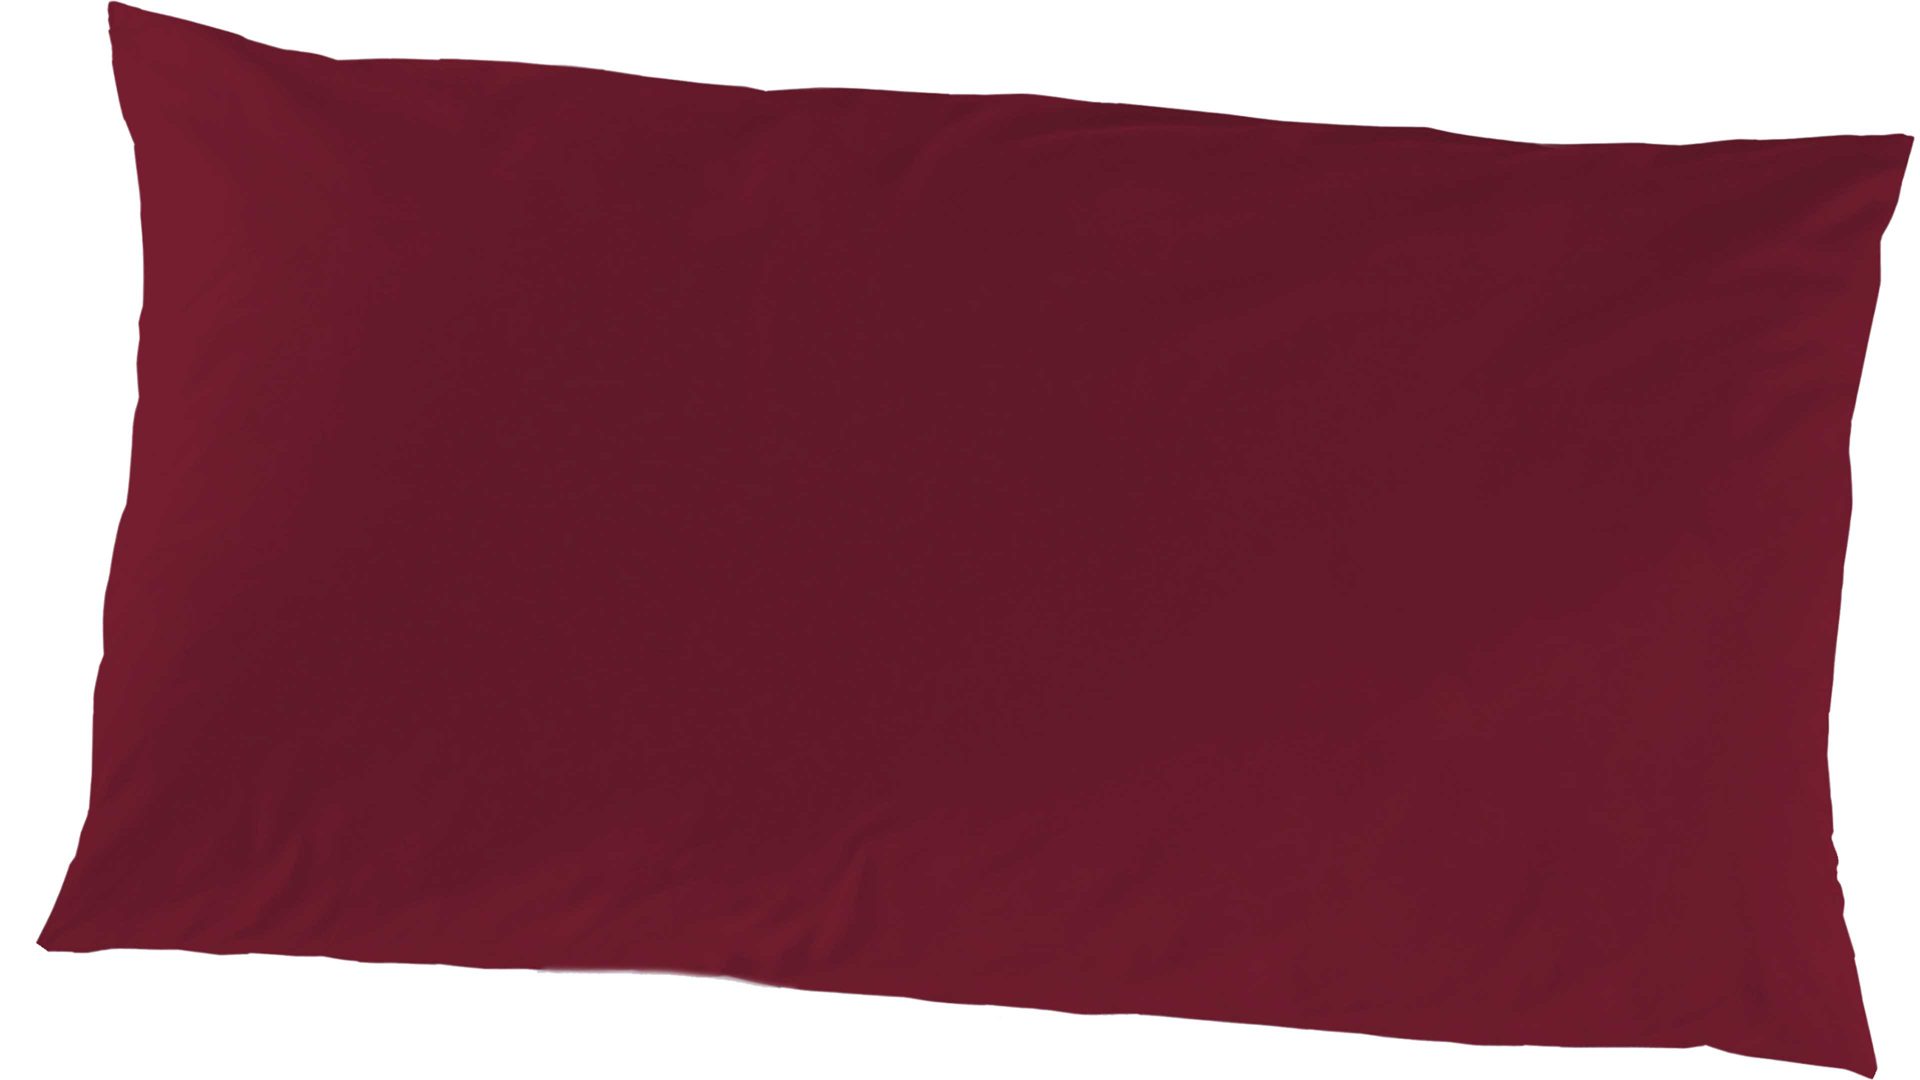 Kissenbezug /-hülle H.g. hahn haustextilien aus Stoff in Dunkelrot HAHN Luxus-Satin-Kopfkissenbezug Sempre bordeauxfarbener Baumwollsatin – ca. 40 x 80 cm